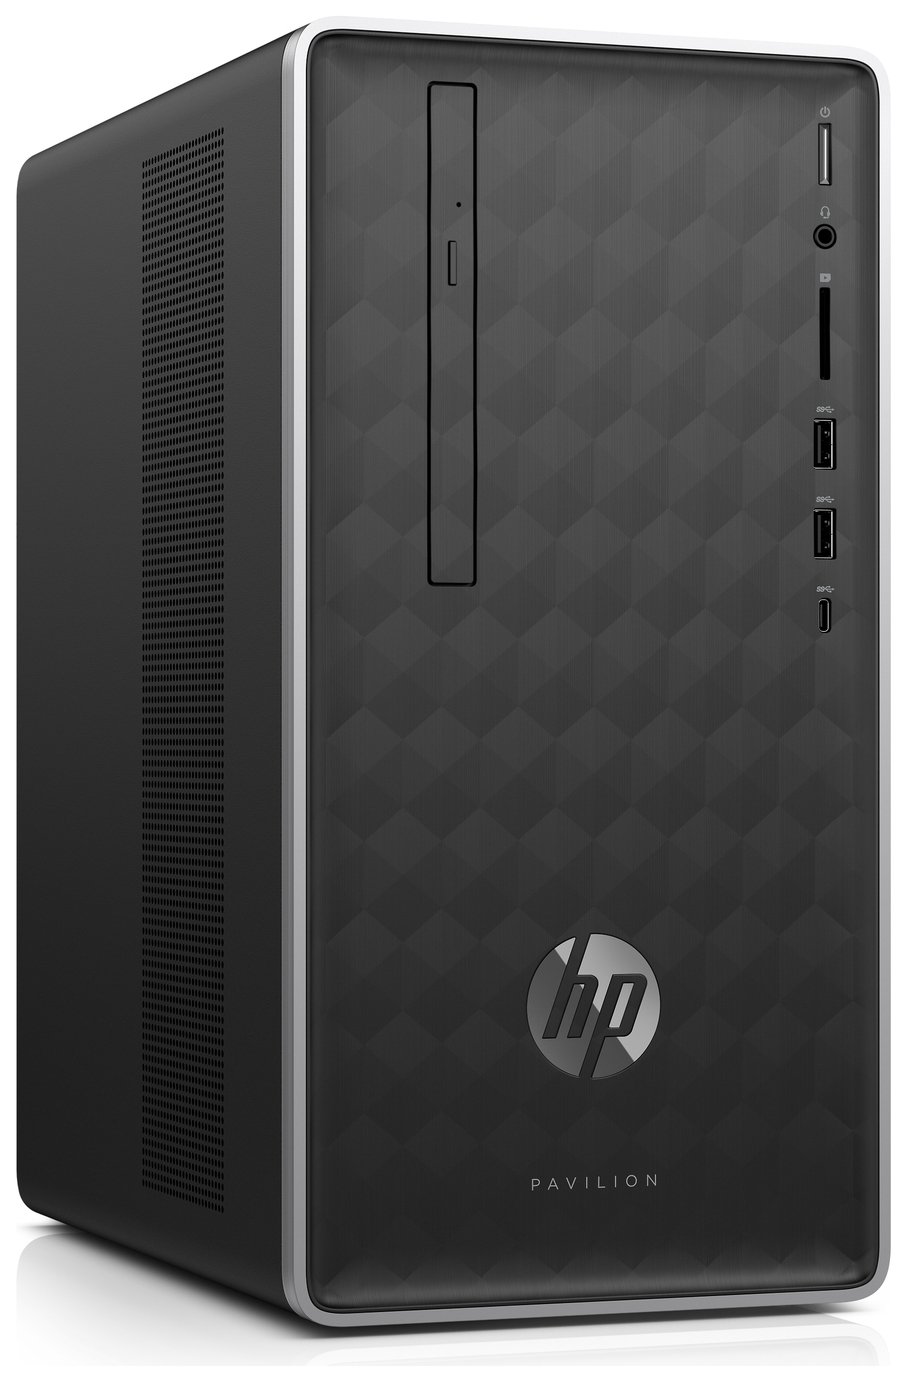 HP Pavilion Celeron 4GB 1TB Desktop PC review